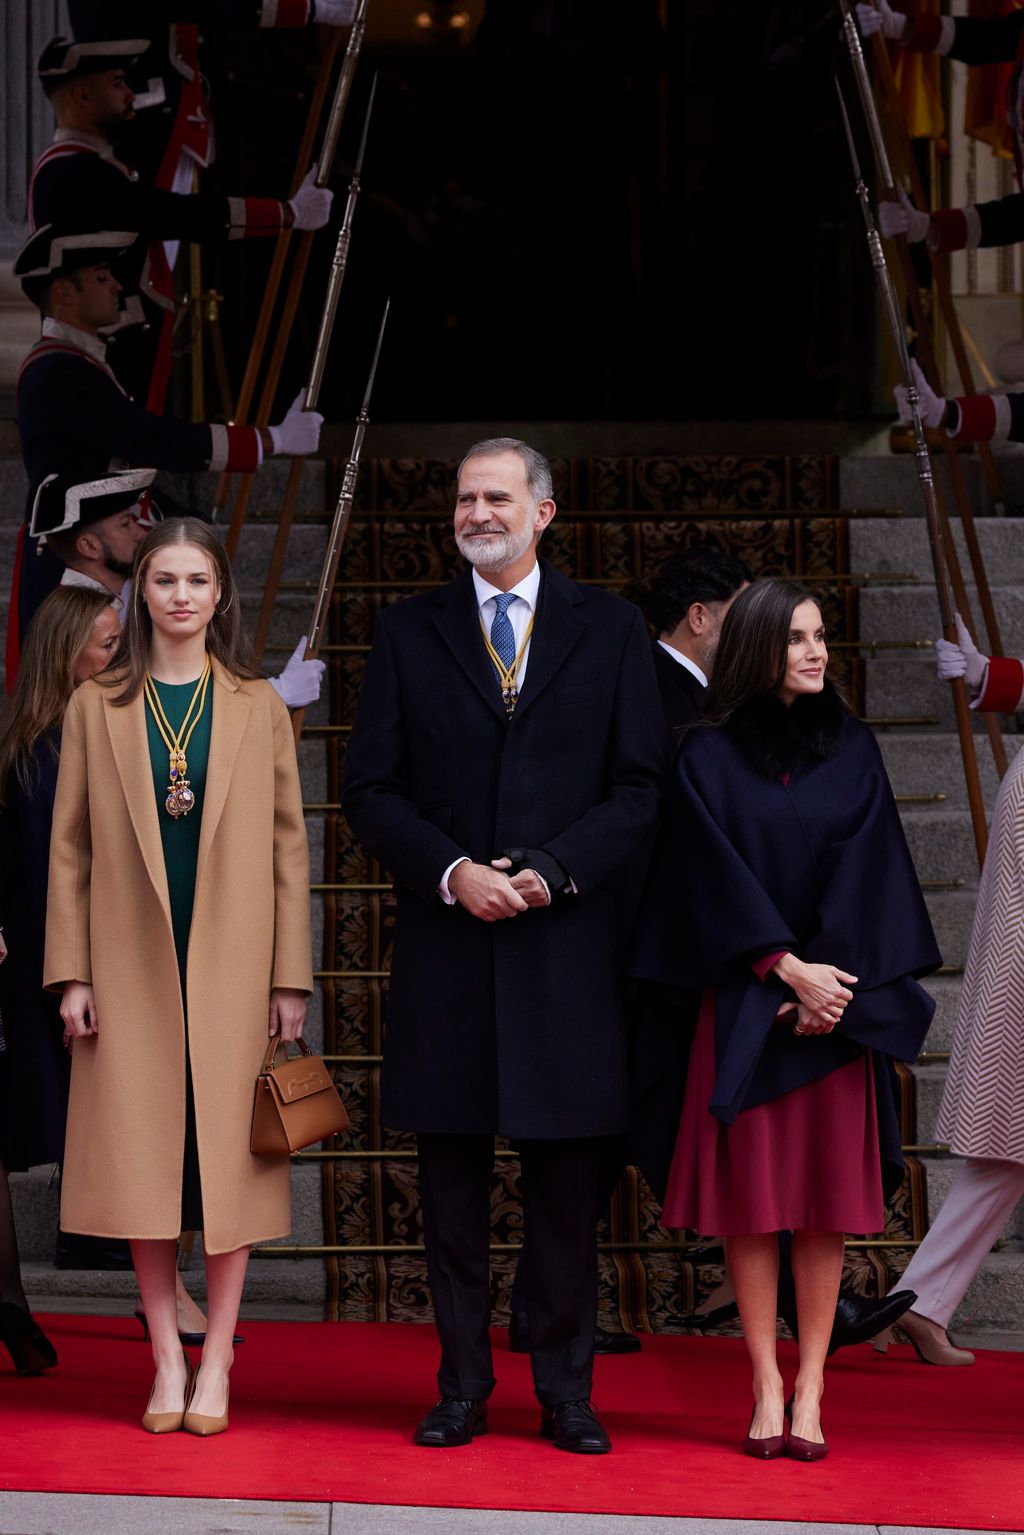 La princesa Leonor y los Reyes, durante la apertura de la XV Legislatura en las Cortes Generales